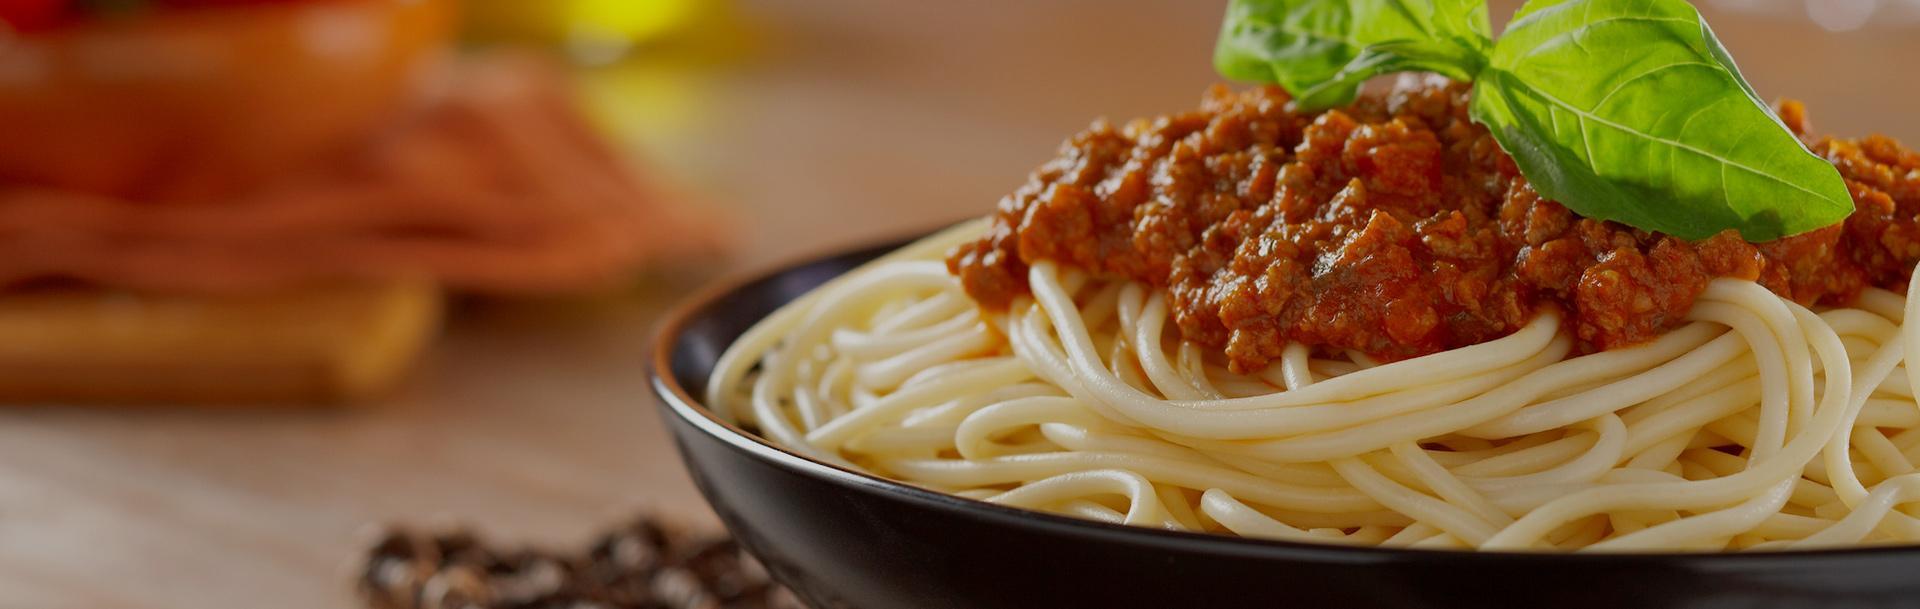 Spaghetti w ciemnym naczyniu